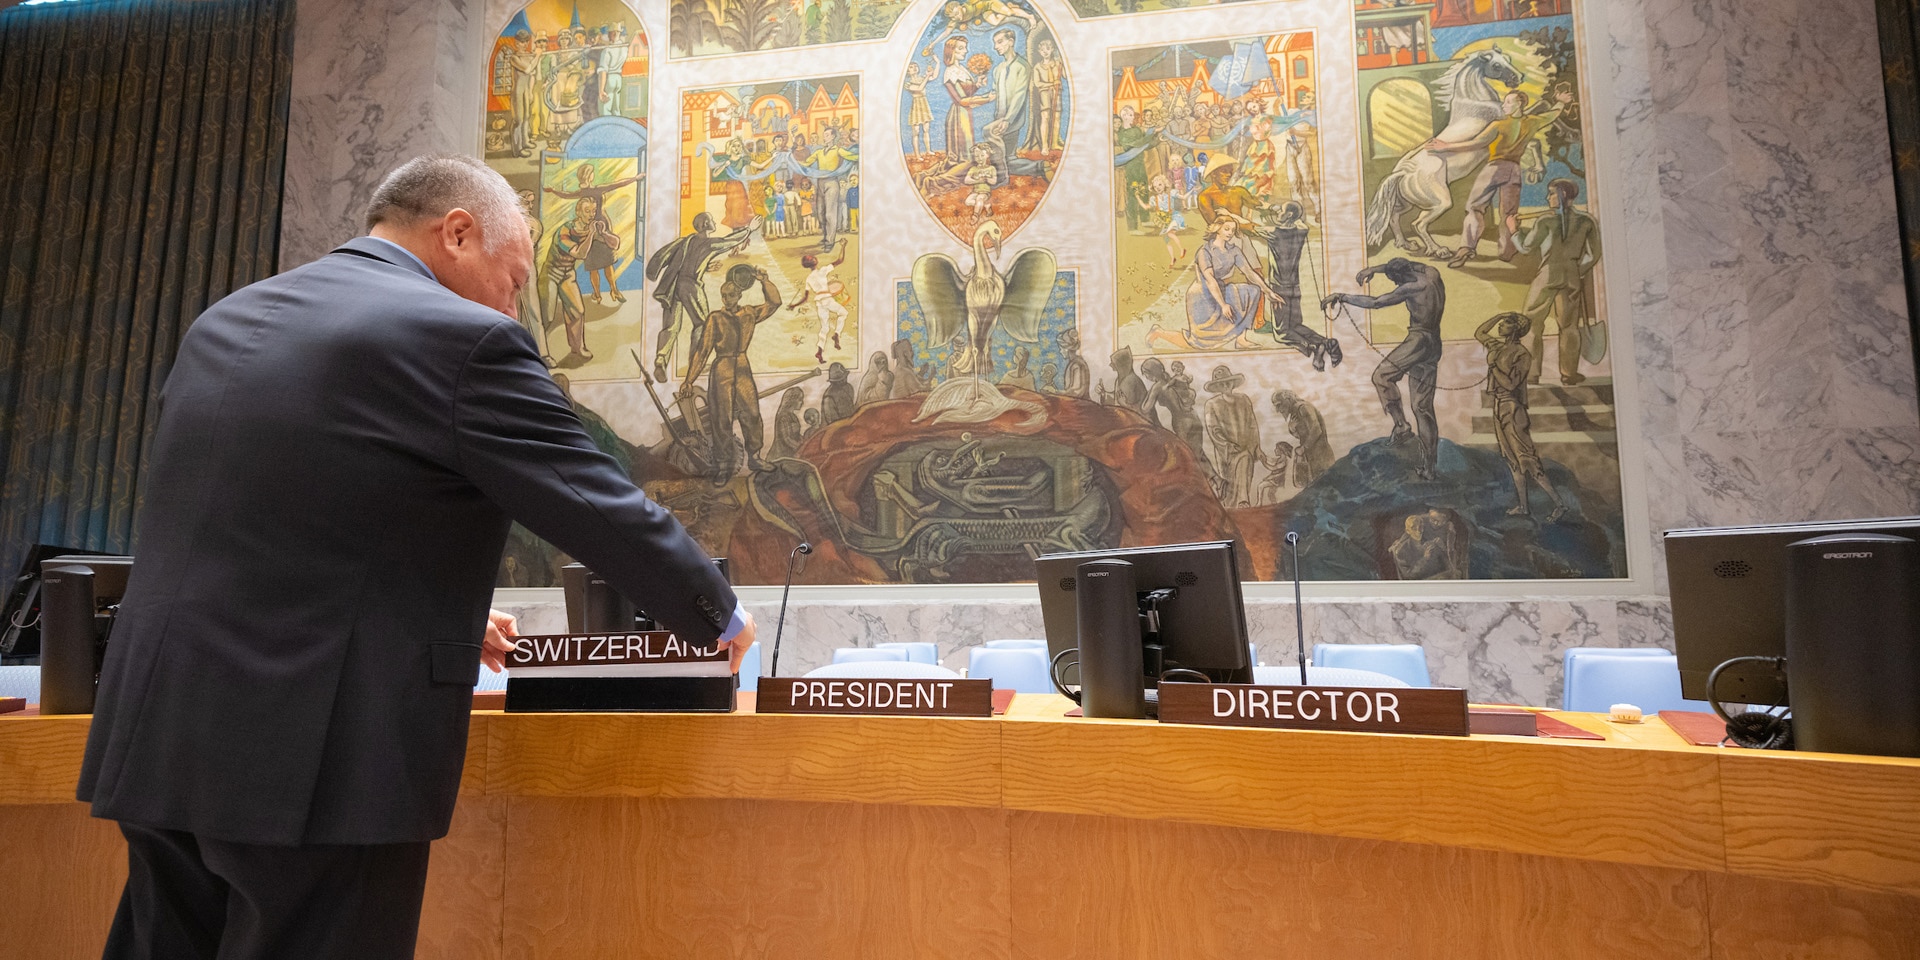  Un funzionario dell’ONU colloca un cartello con la scritta «Svizzera» al posto della Presidenza al tavolo a ferro di cavallo del Consiglio di Sicurezza dell’ONU.